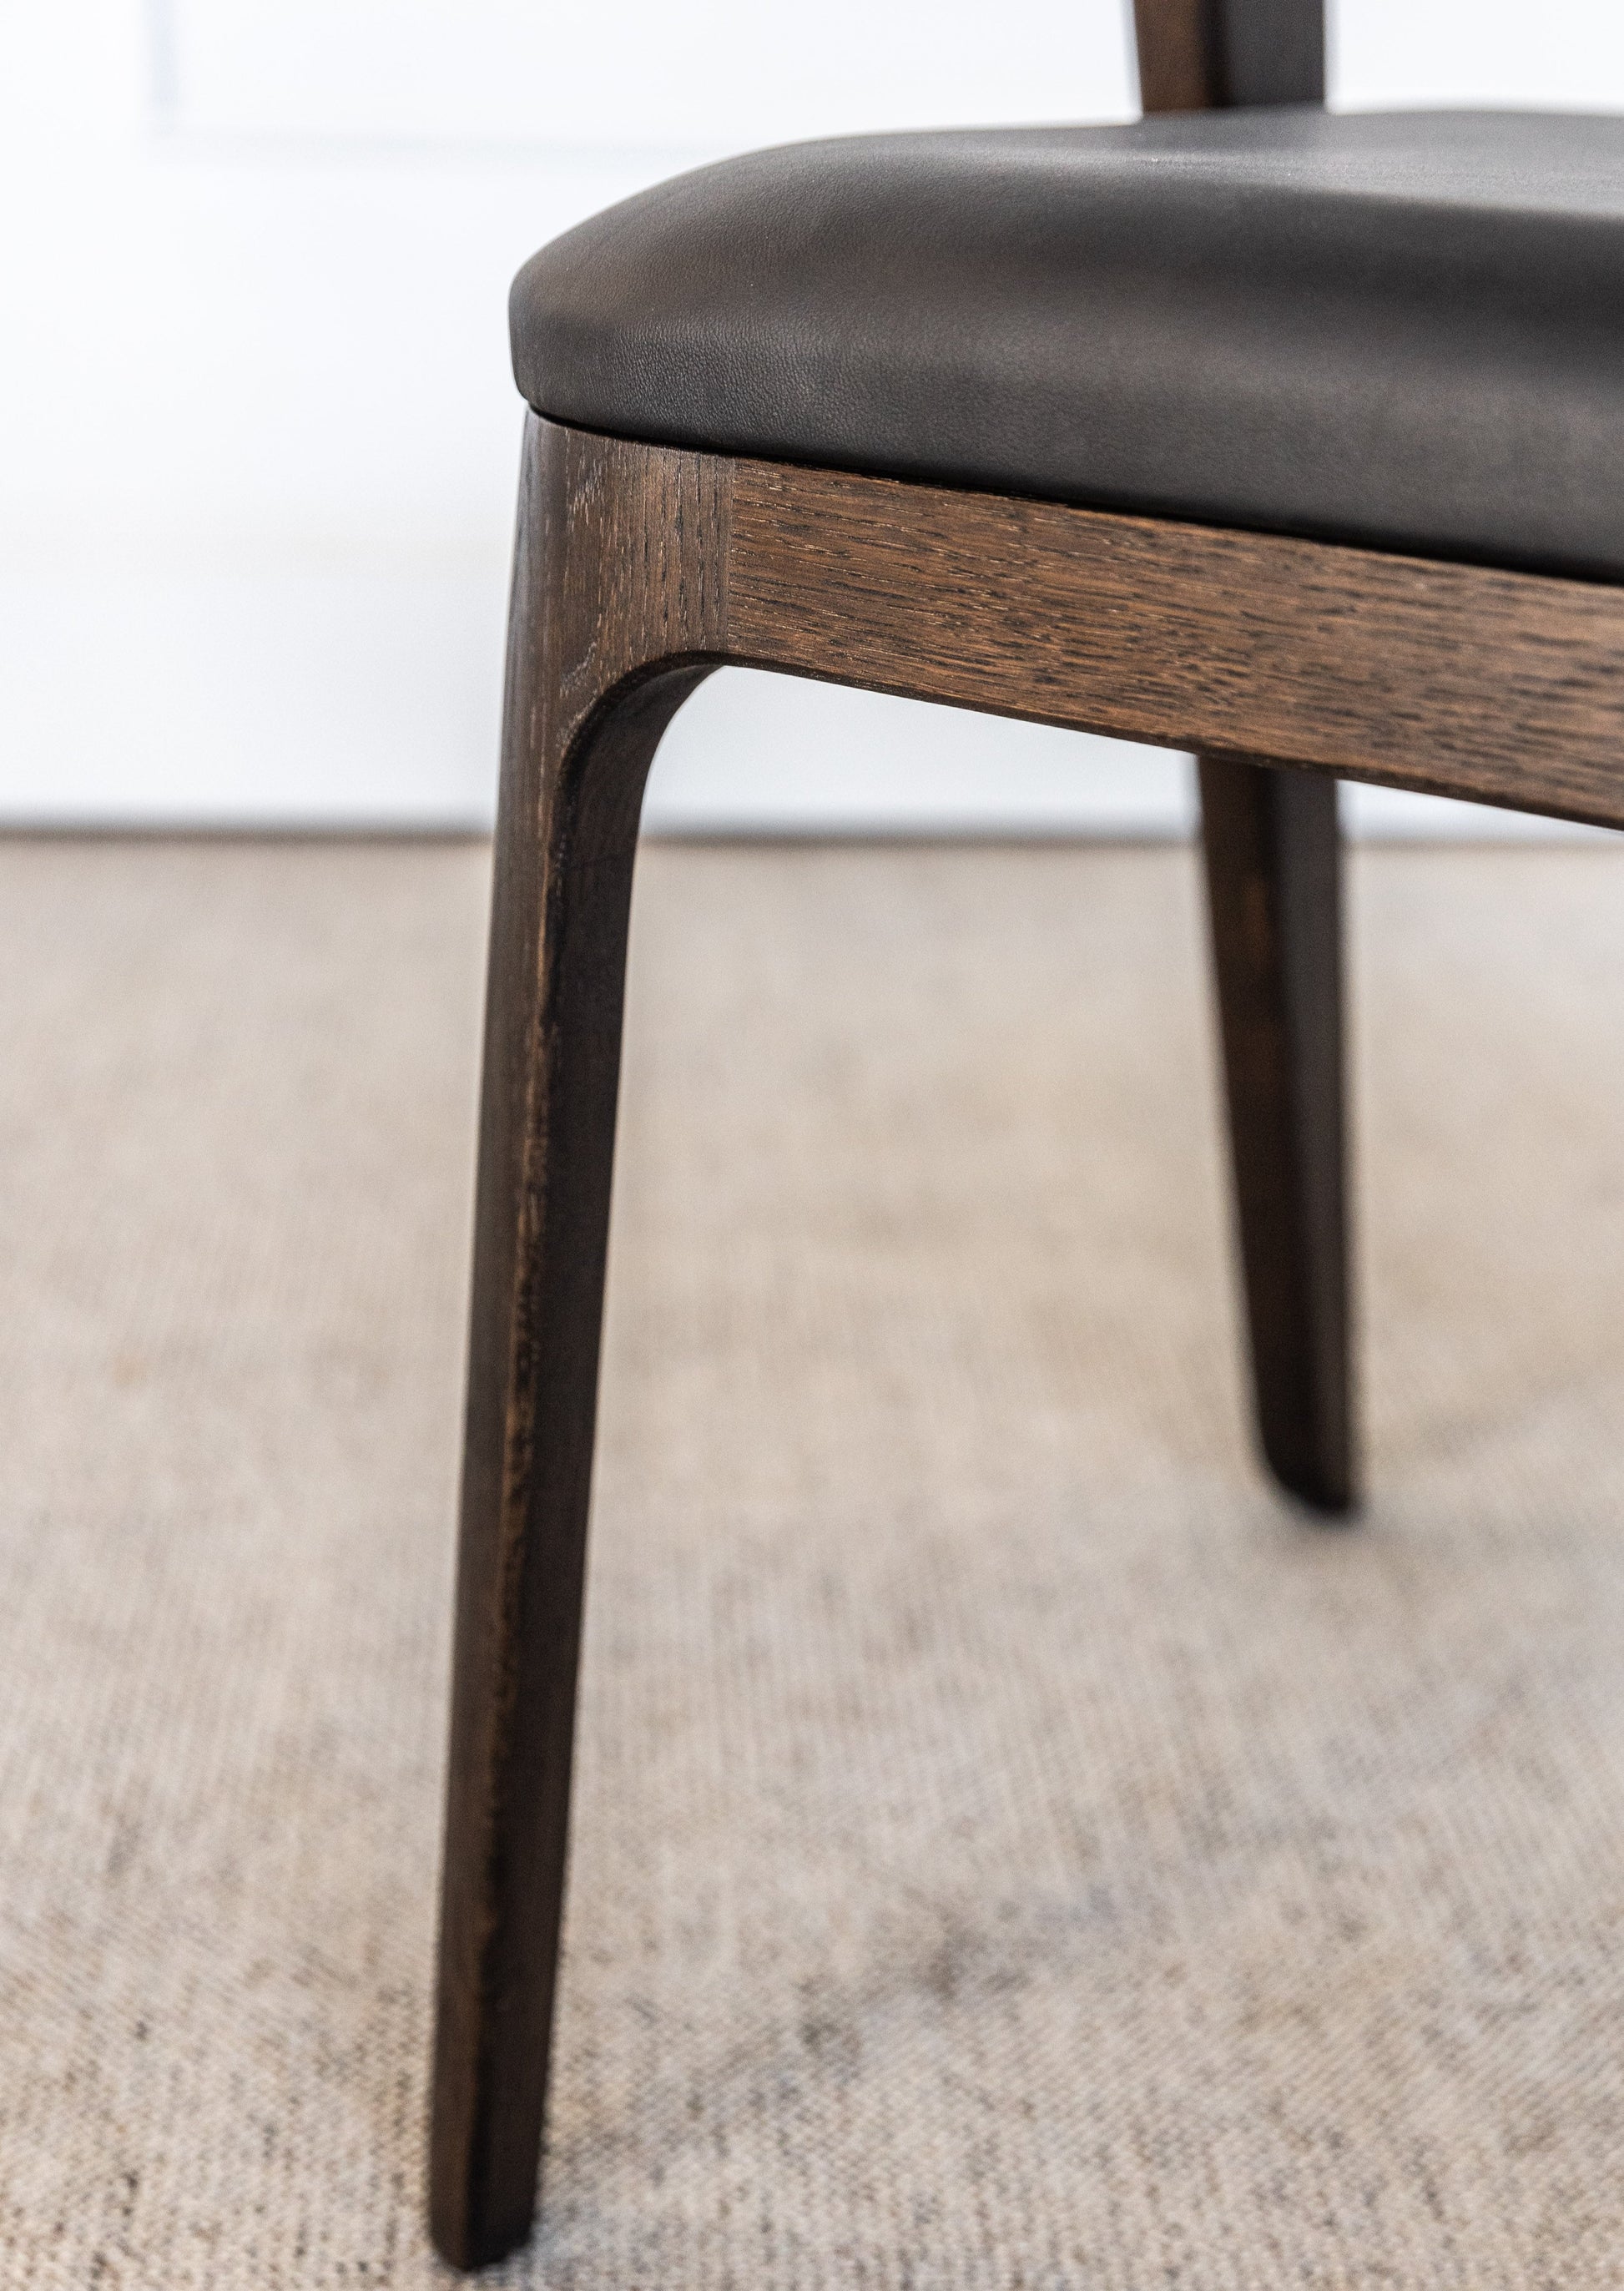 Stolen Vera er håndlaget i heltre eik som har elegant eikmønster. Sittedelen er laget av naturlig skinn. Denne solide stolen vil finne sin plass både i spisestue, kjøkken, arbeidsrom og soverom.